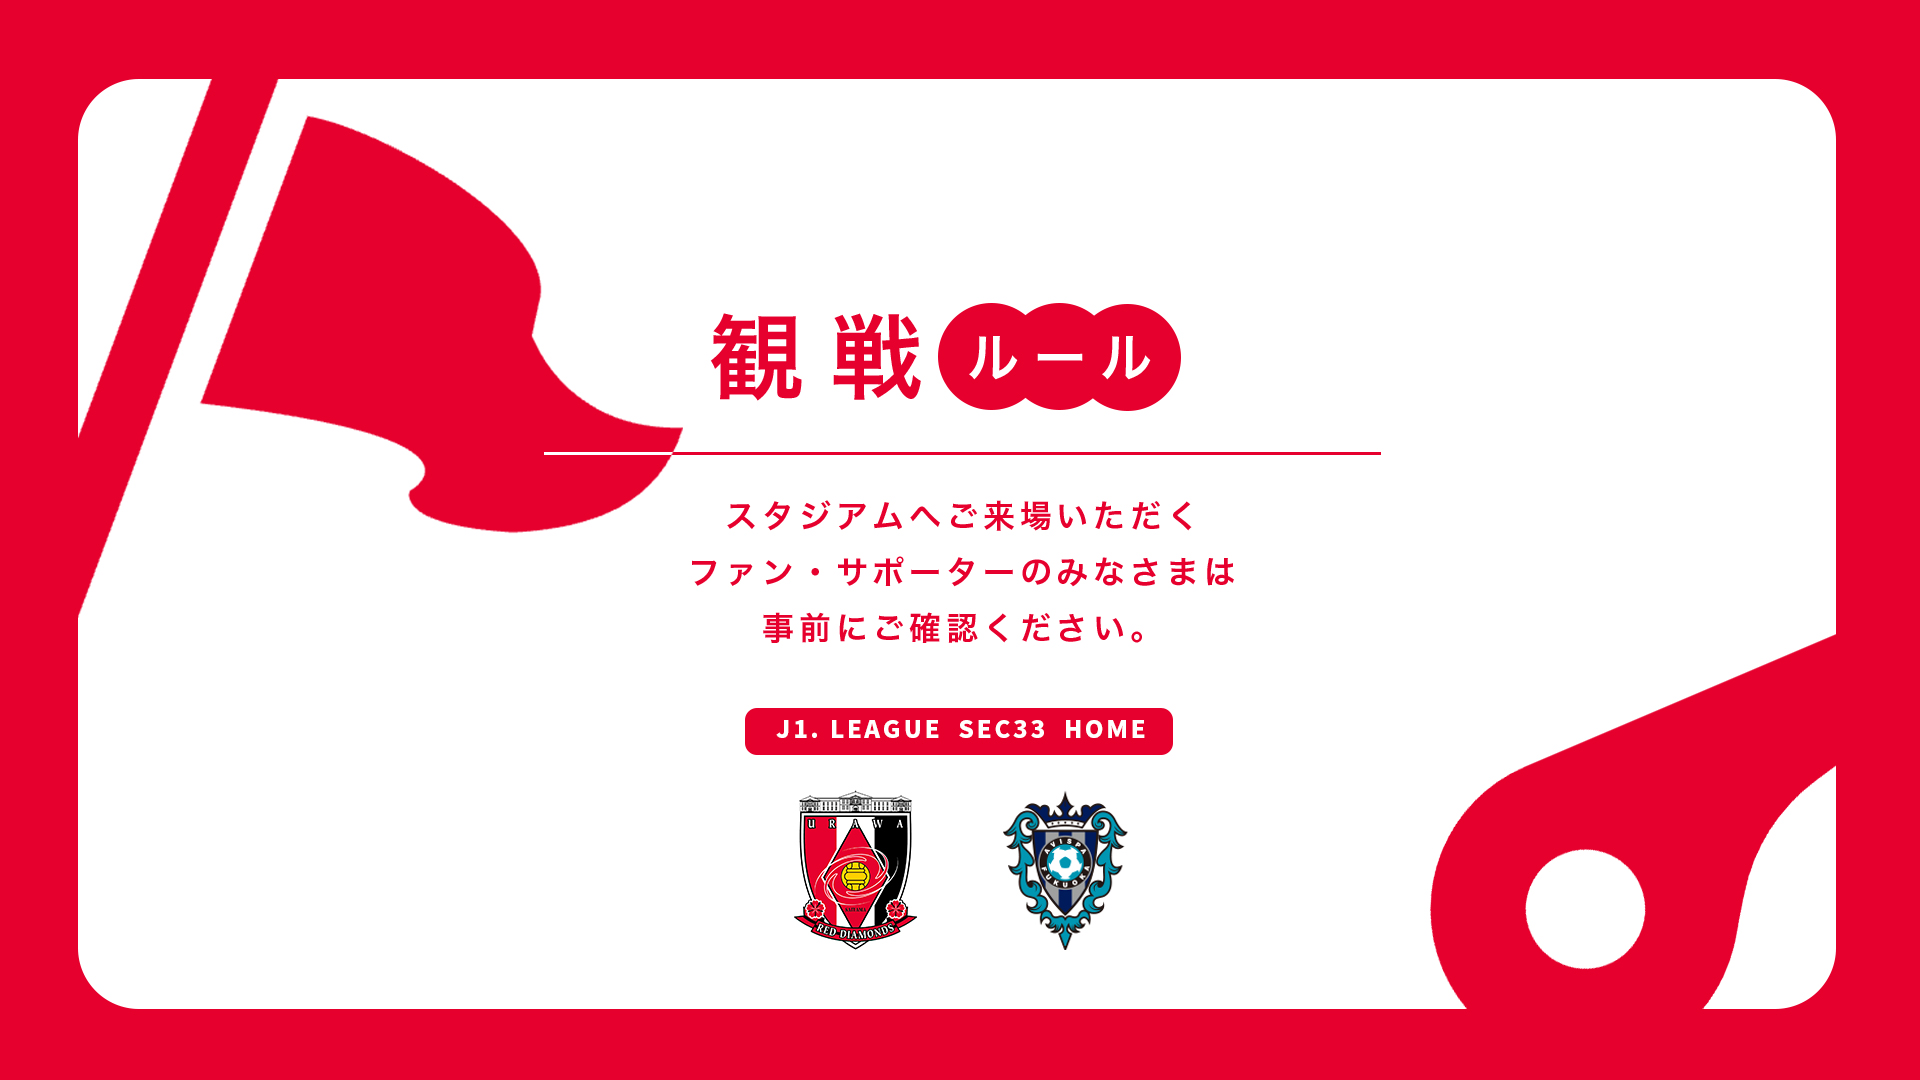 11/25(土) vs 福岡 試合観戦ルールについて | URAWA RED DIAMONDS